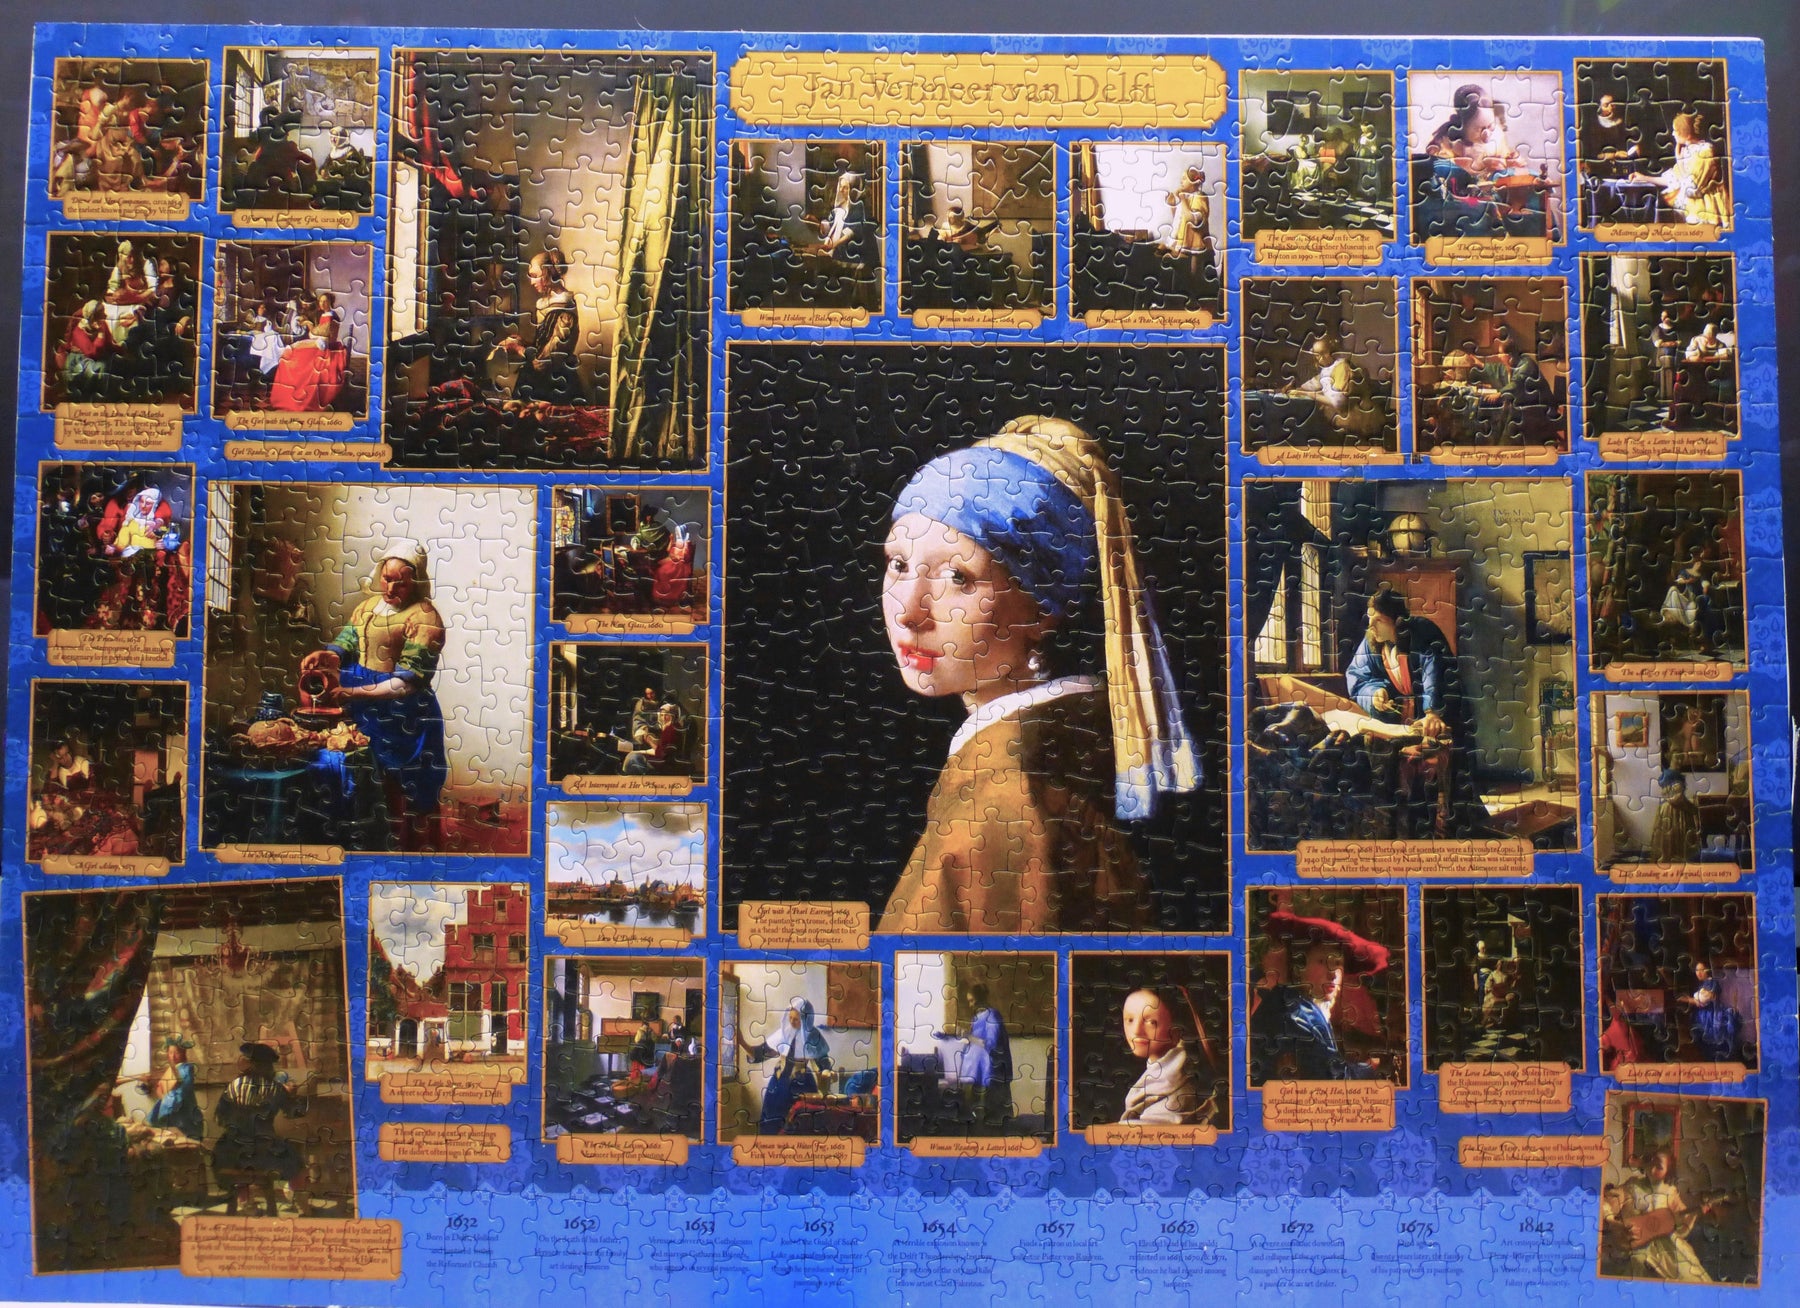 History of Vermeer